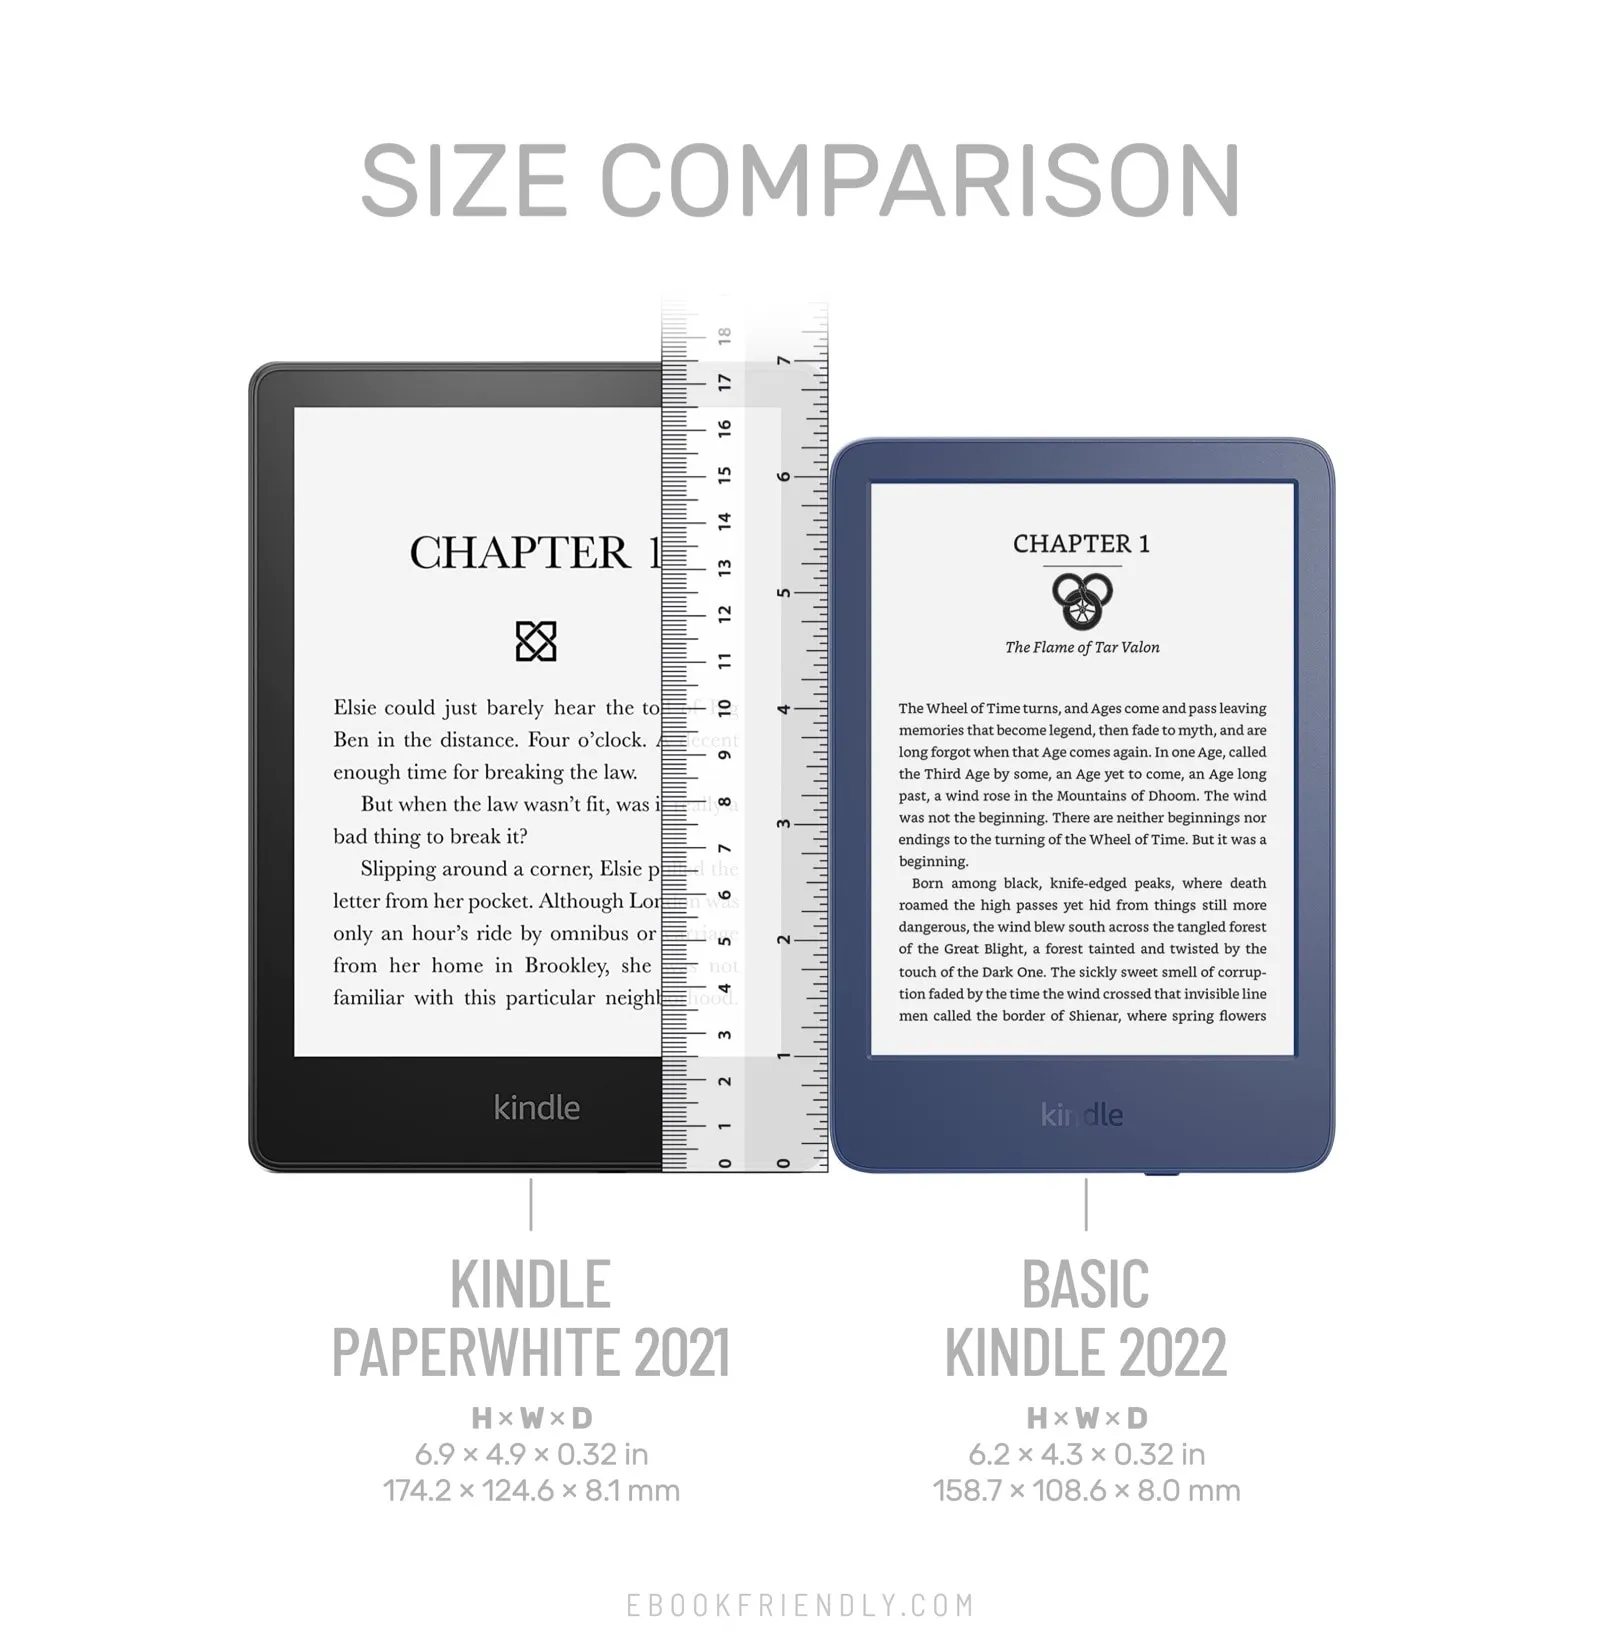 Amazon Kindle vs Kindle Paperwhite- Size comparison